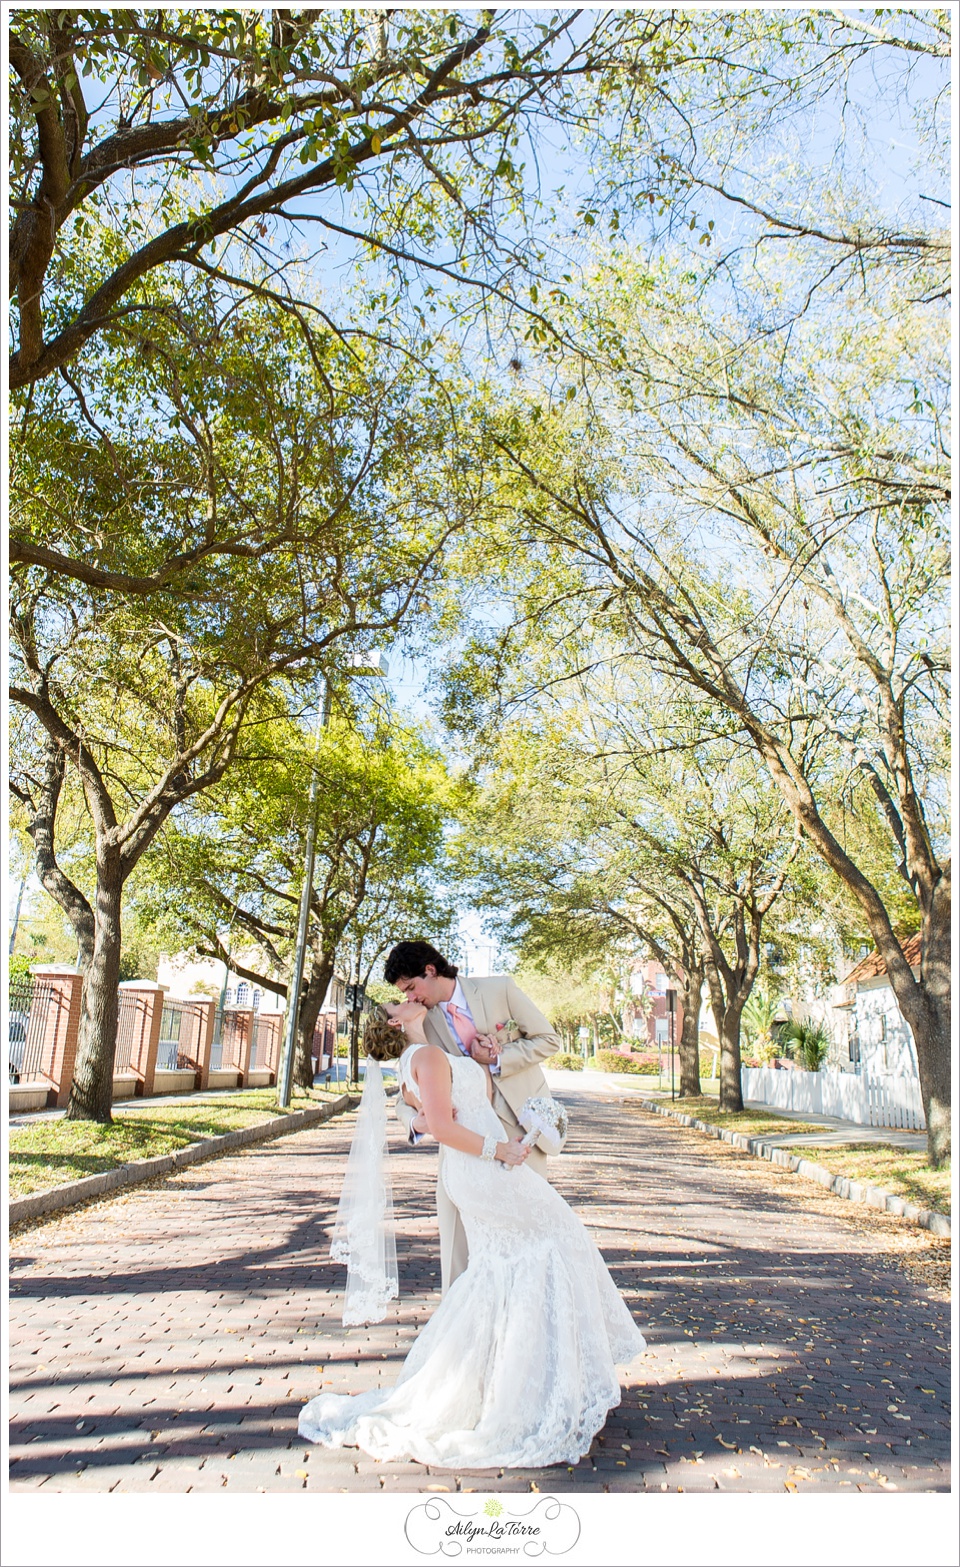 Ybor City wedding |  by © Ailyn La Torre Photography 2014